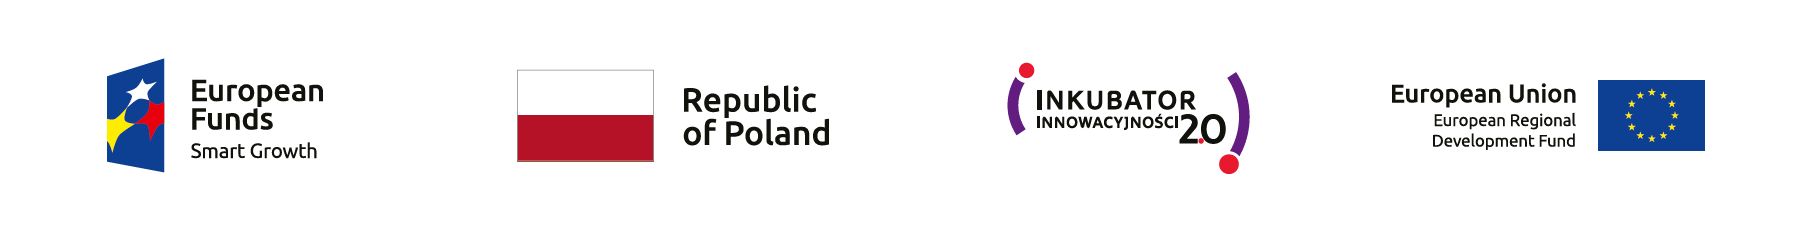 Logos od European Funds, Republic of Poland, Inkubator Innowacyjności 2.0, European Union